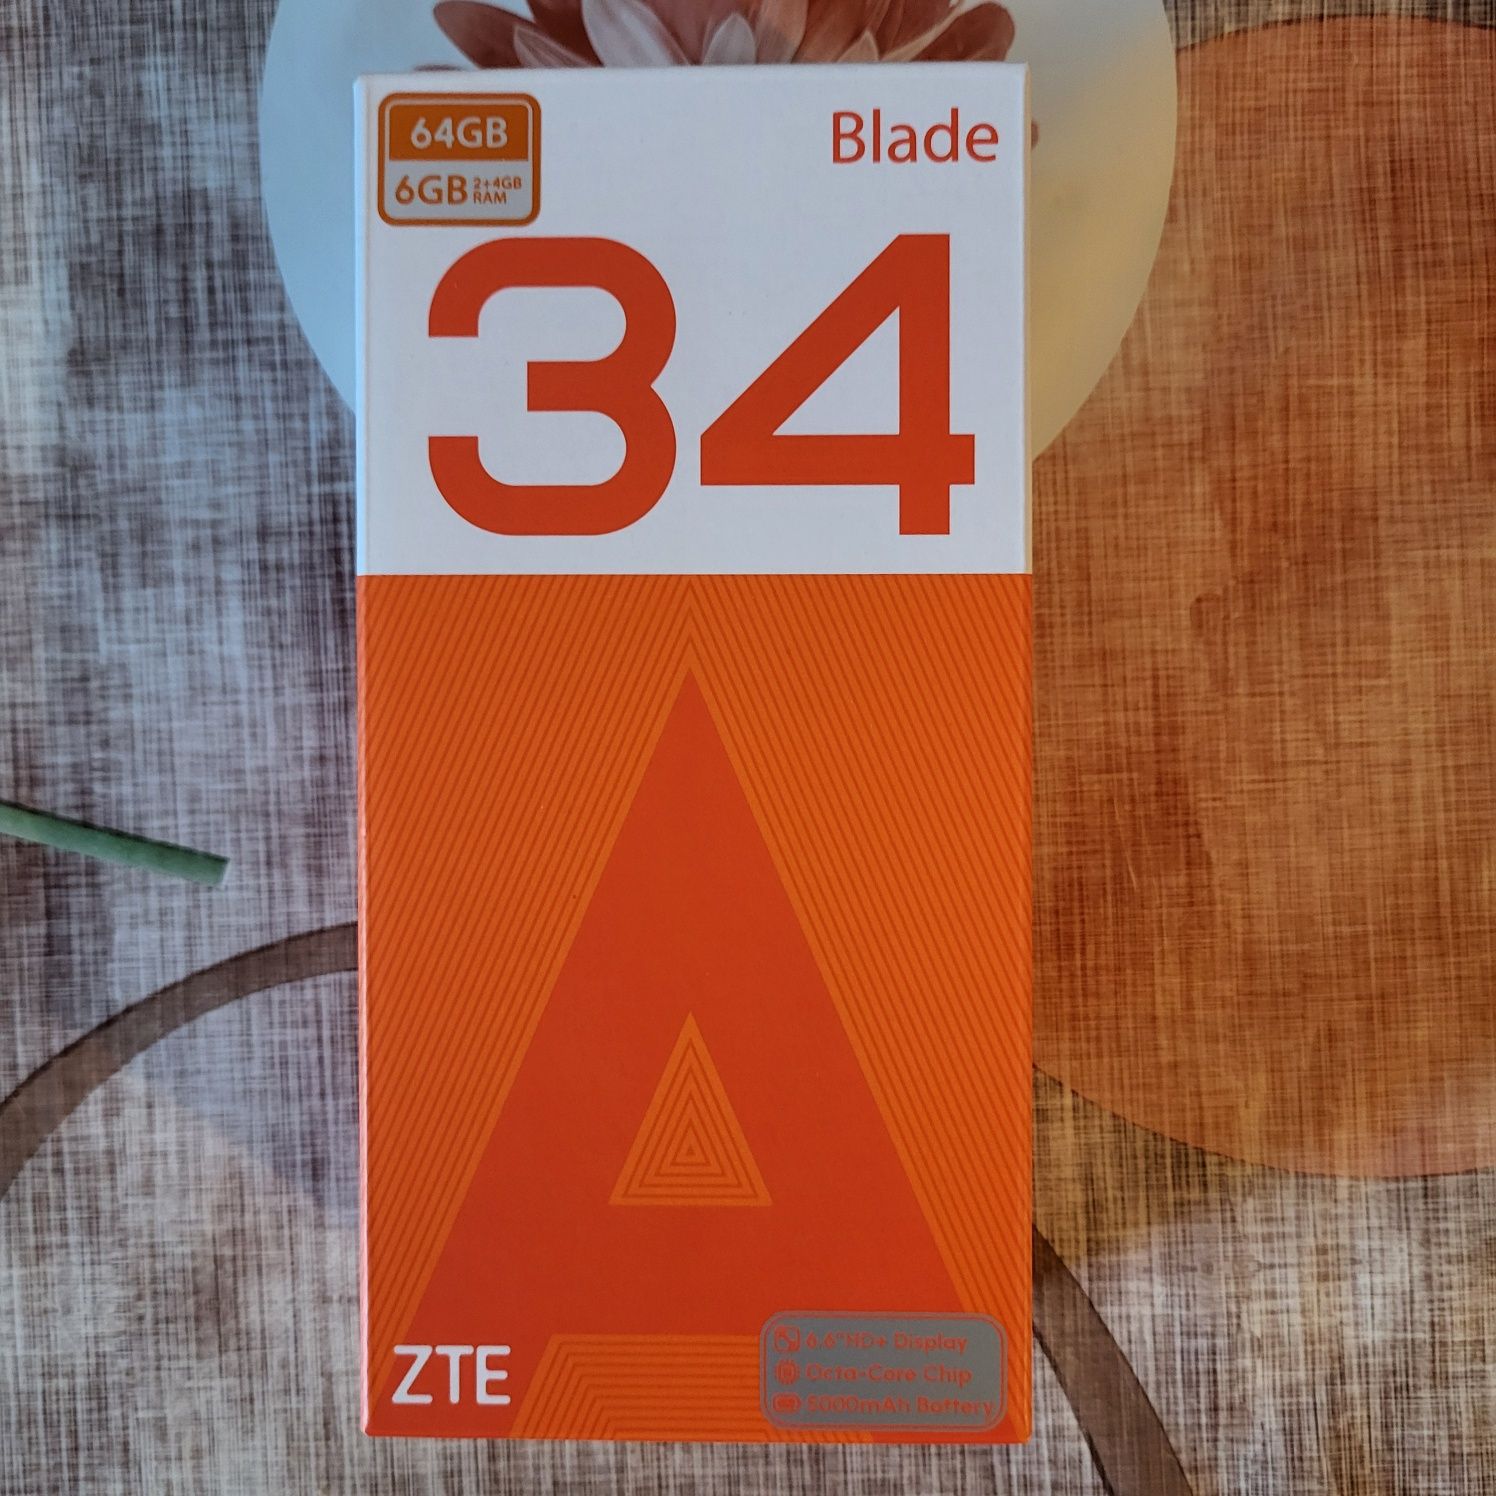 Telefon ZTE. 34. Blade.